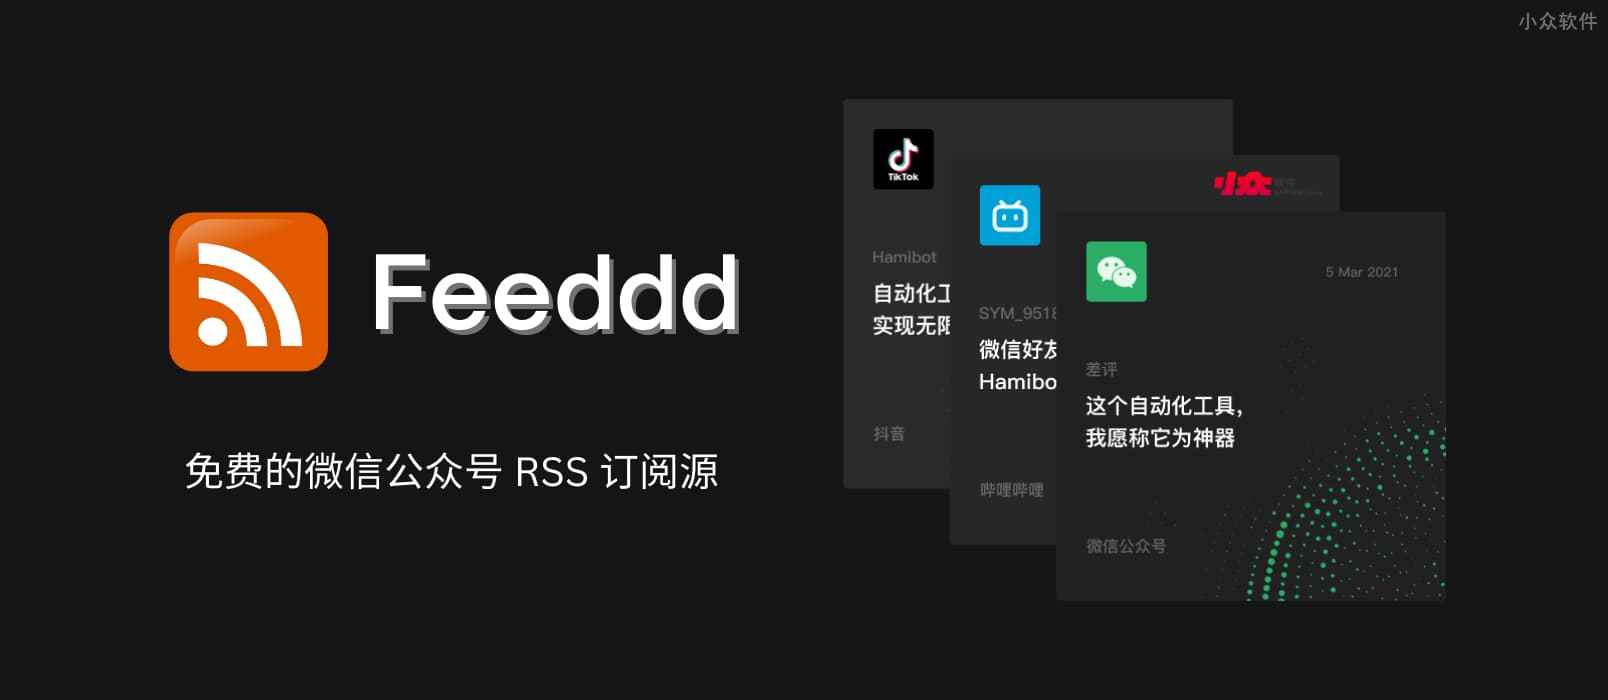 分布式免费微信公众号 RSS 订阅源项目 Feeddd 关闭